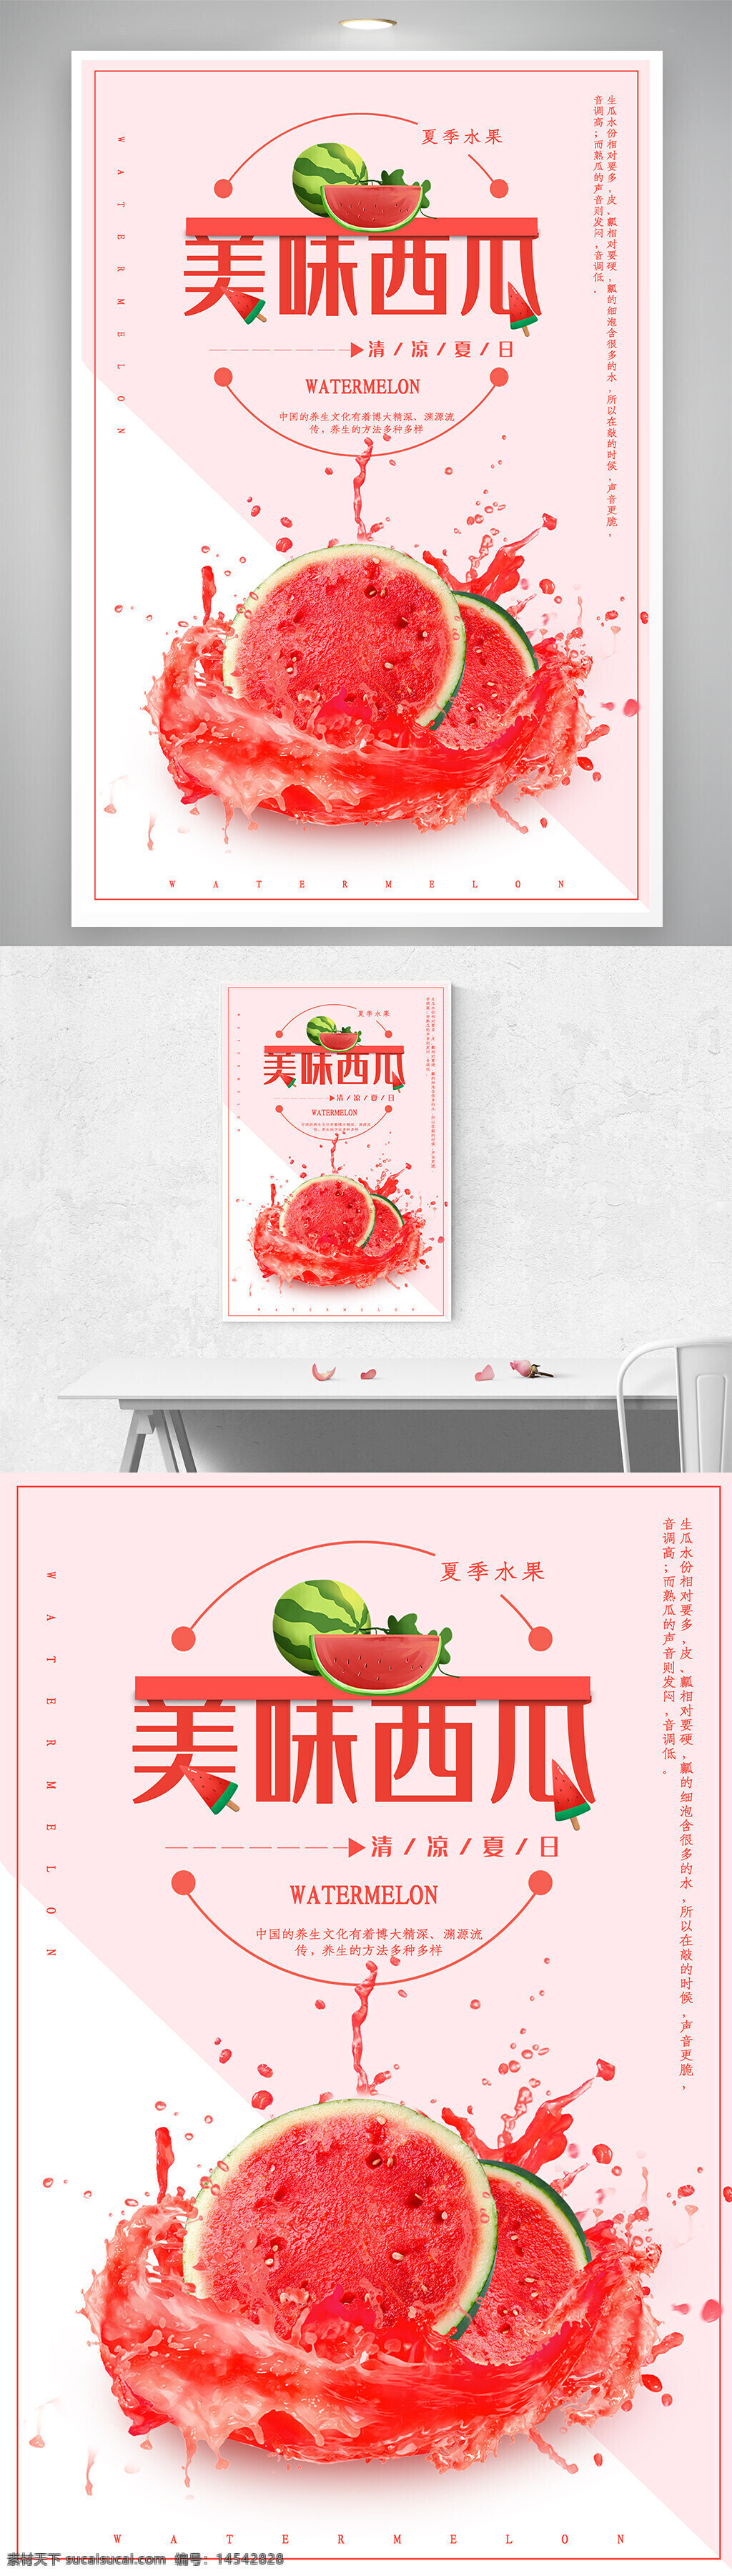 夏季 美味 西瓜汁 水果 促销 海报